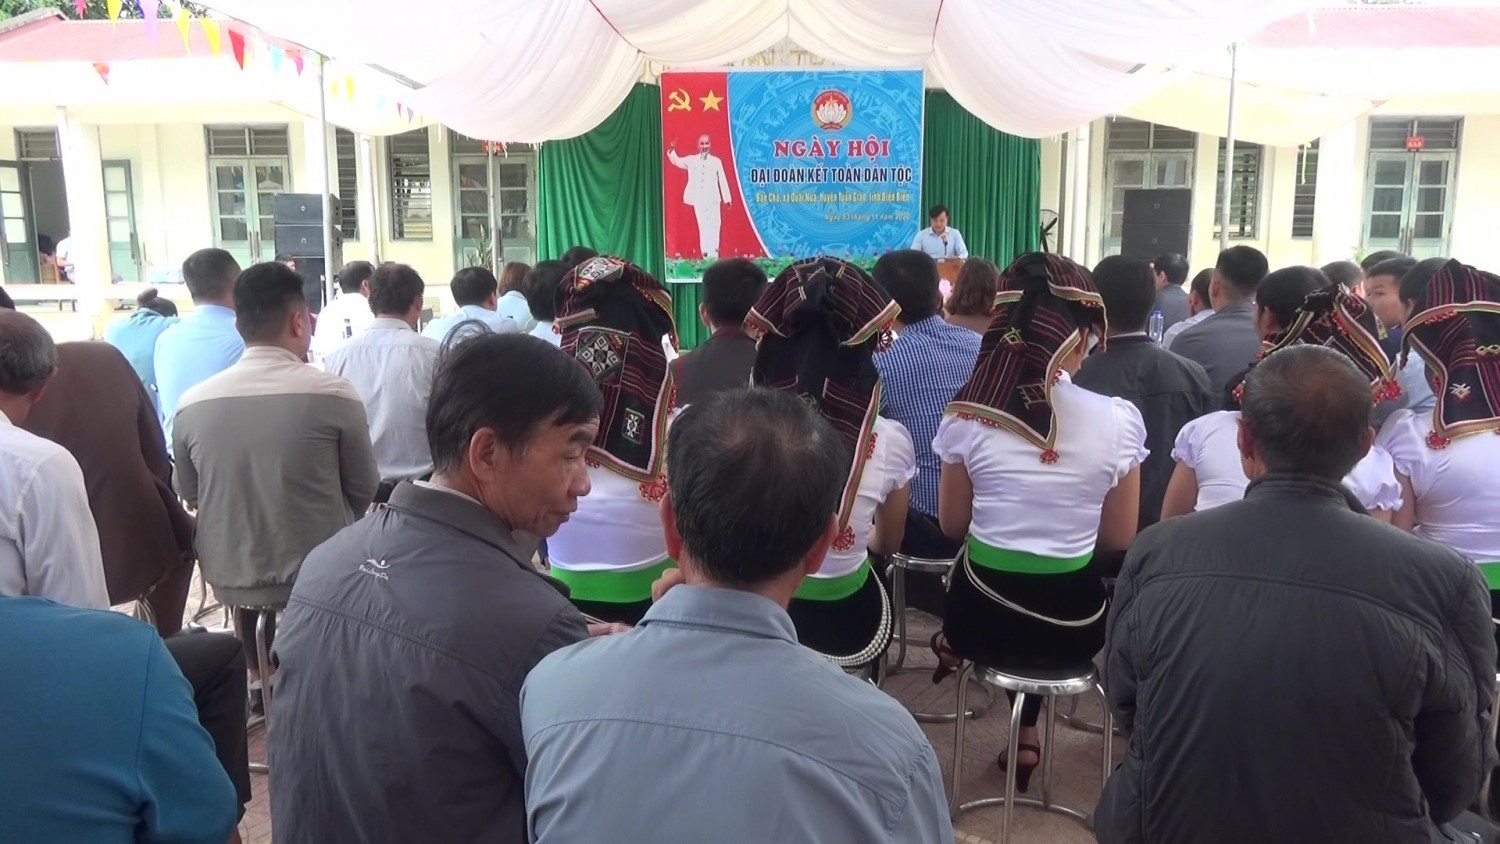 Bản Chá, xã Quài Nưa là khu dân cư đầu tiên tổ chức Ngày hội đại đoàn kết toàn dân tộc tại huyện Tuần Giáo